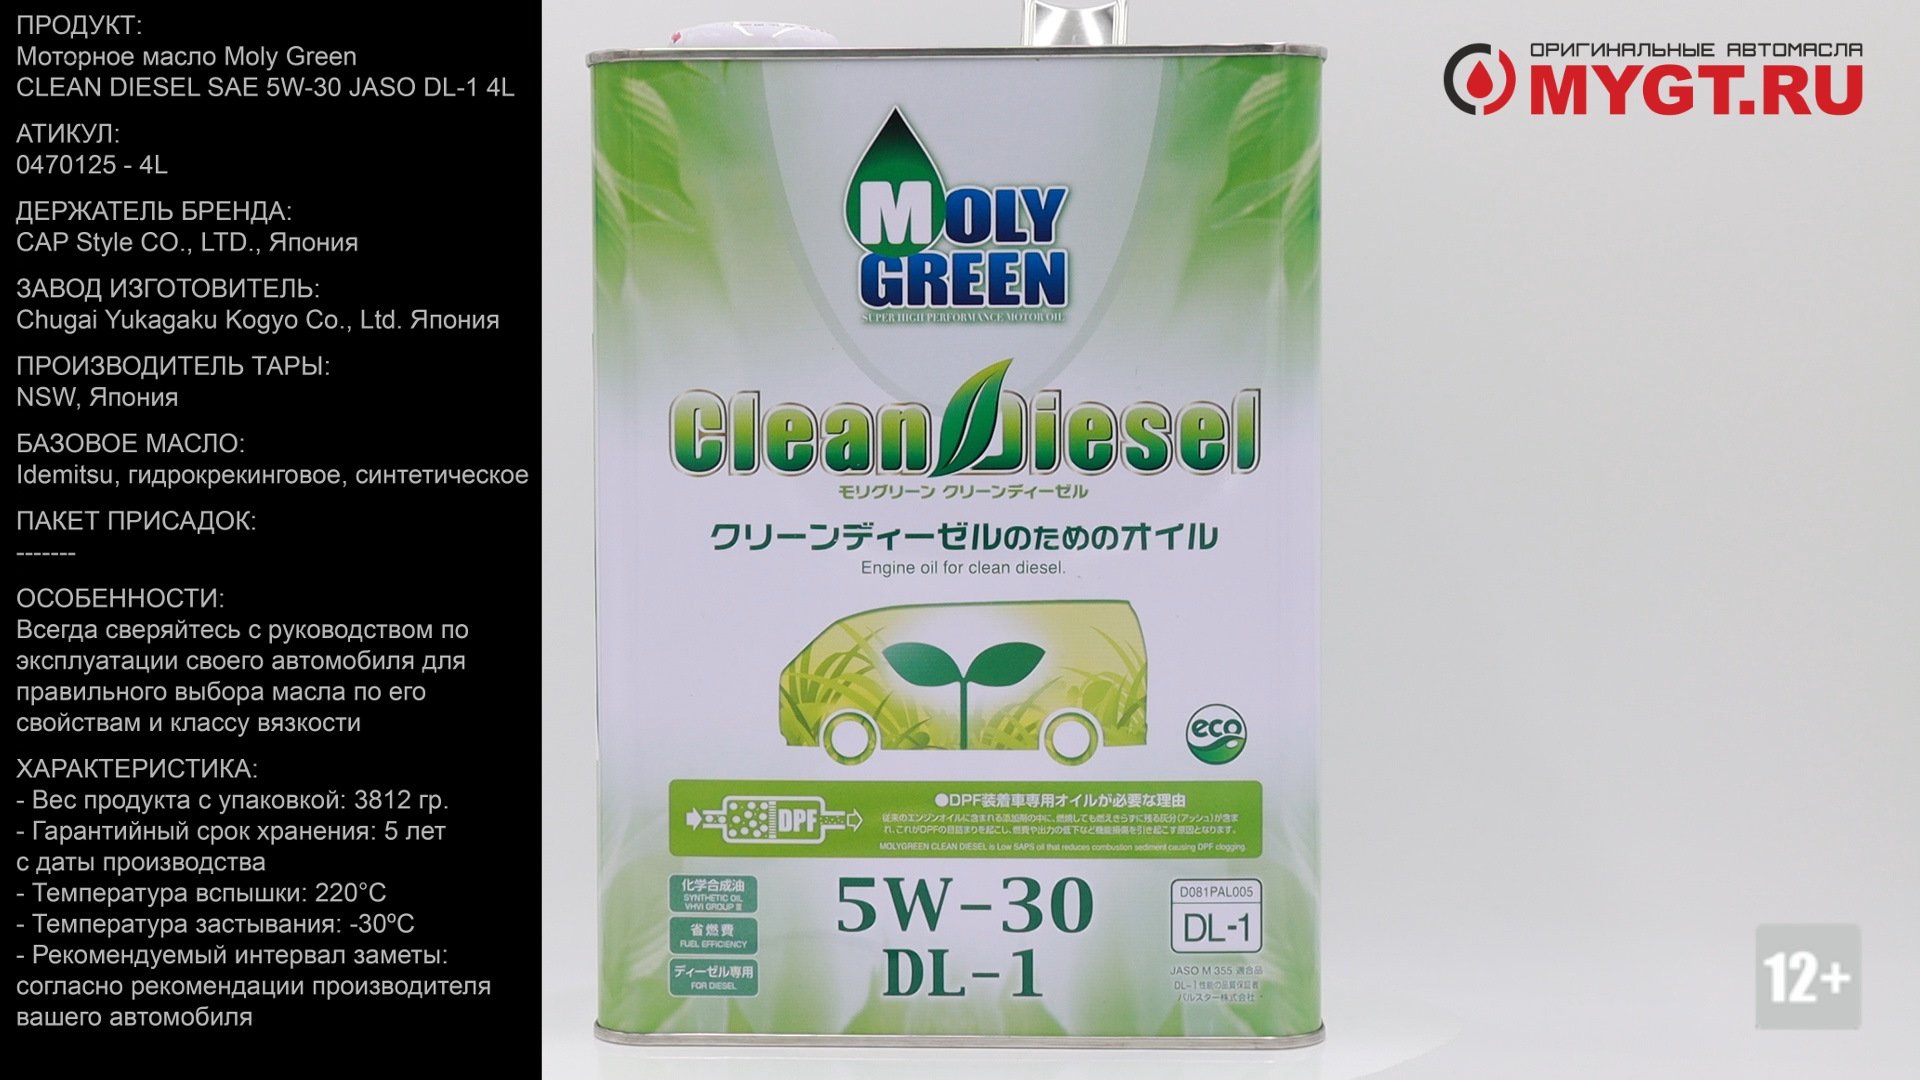 Моли грин 5w30 купить. Moly Green 5w30 DL-1. Moly Green clean Diesel DL-1 5w30. Масло моли Грин дизель дл 1. Моторное масло моли Грин 5 в 30.